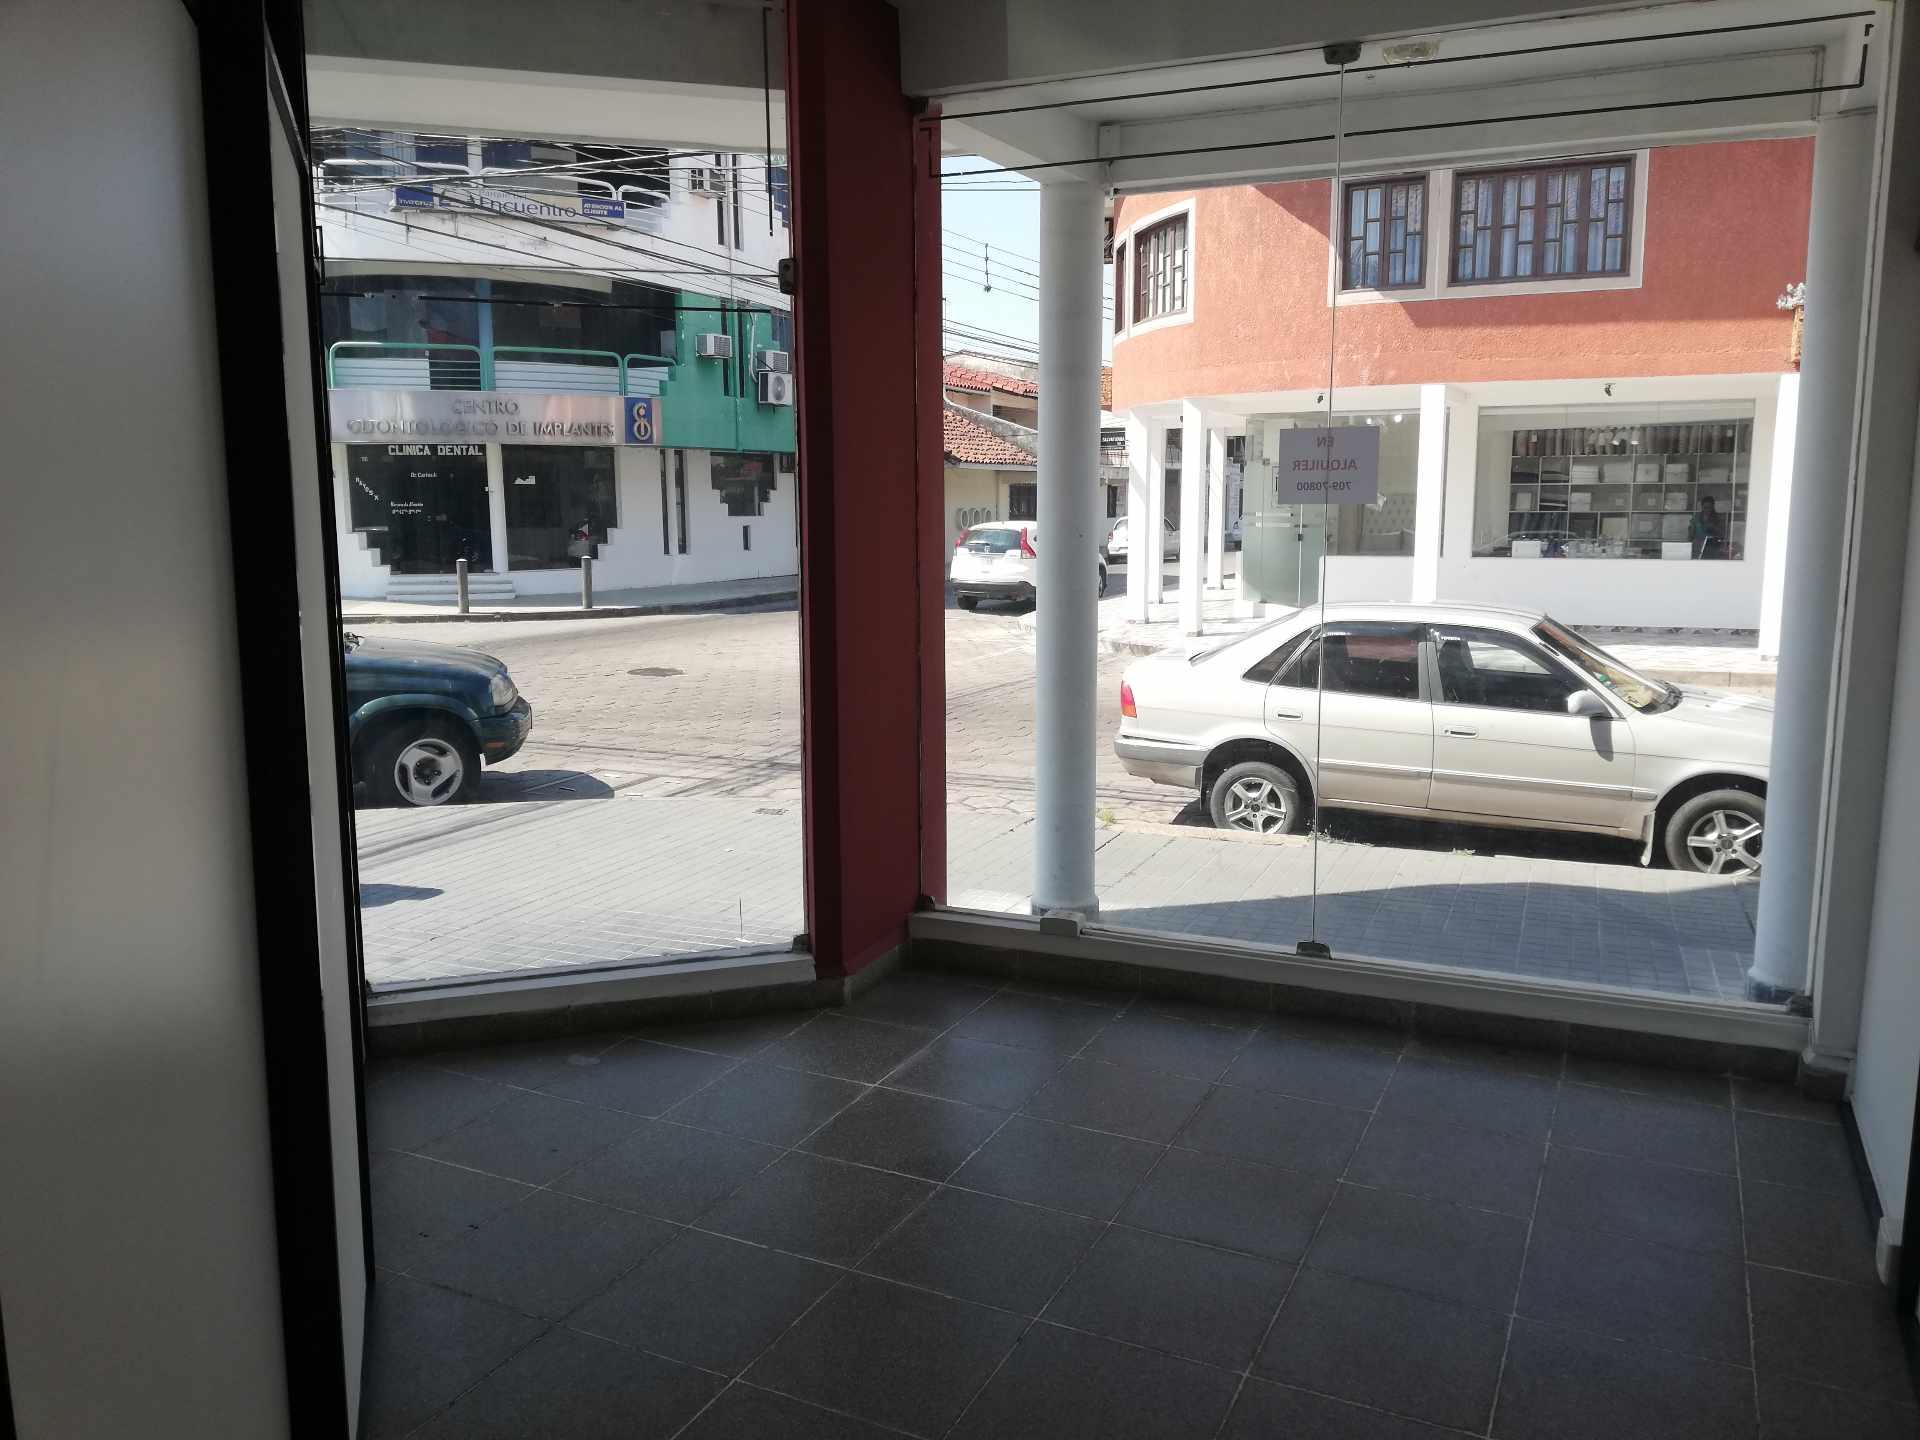 Local comercial CALLE MANUEL IGNACIO SALVATIERRA ESQUINA ORURO Foto 8